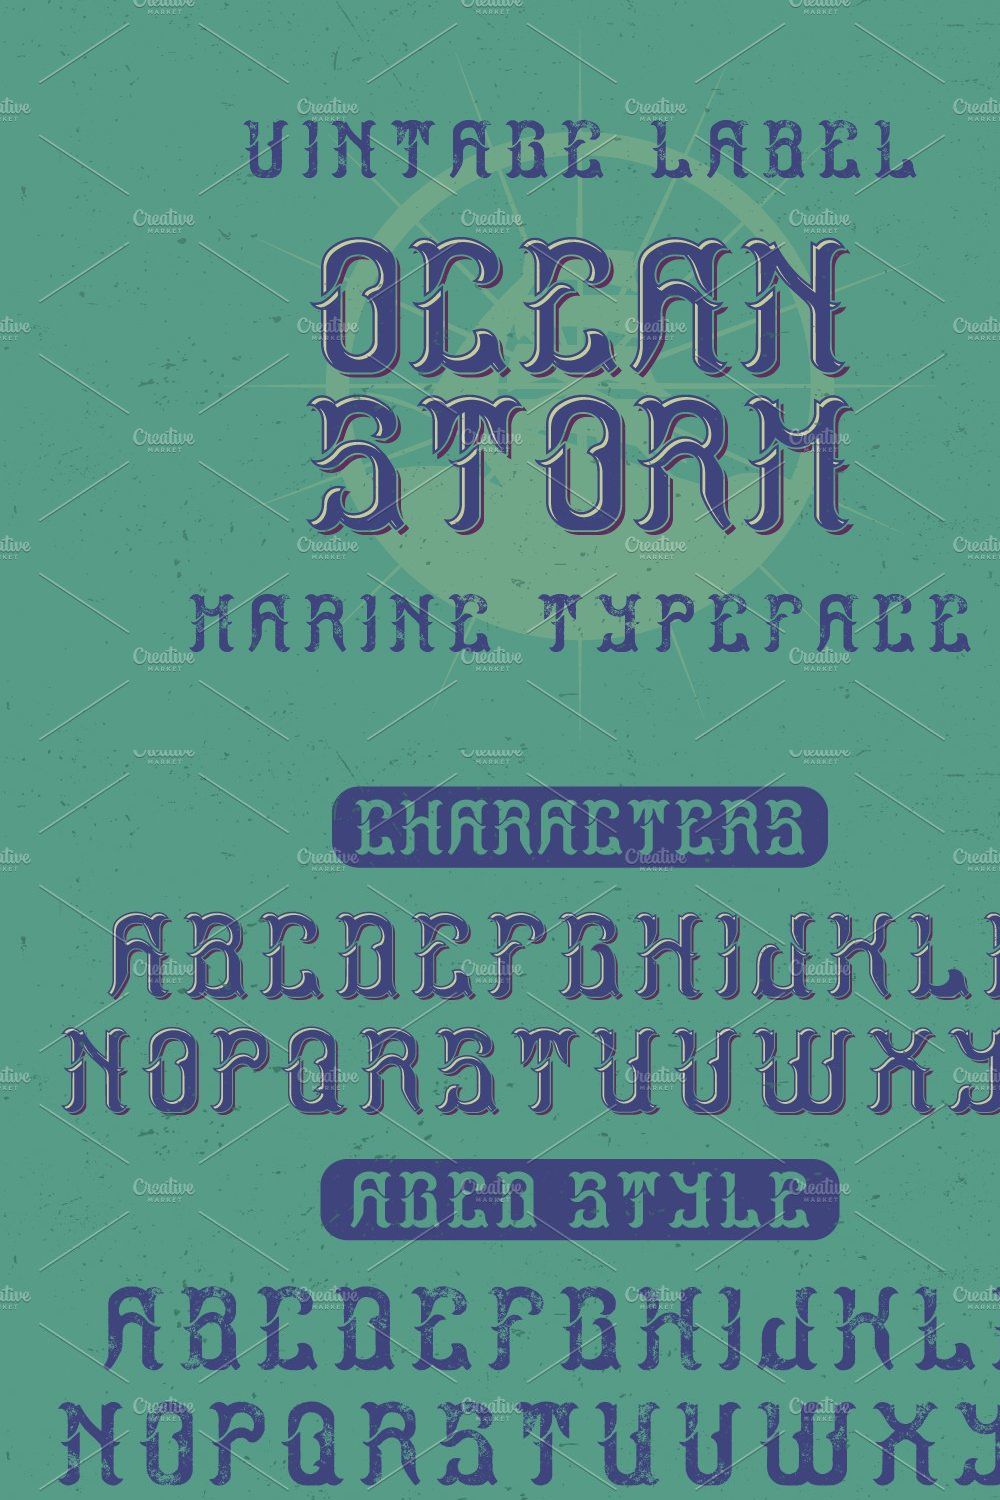 Ocean Storm label font pinterest preview image.